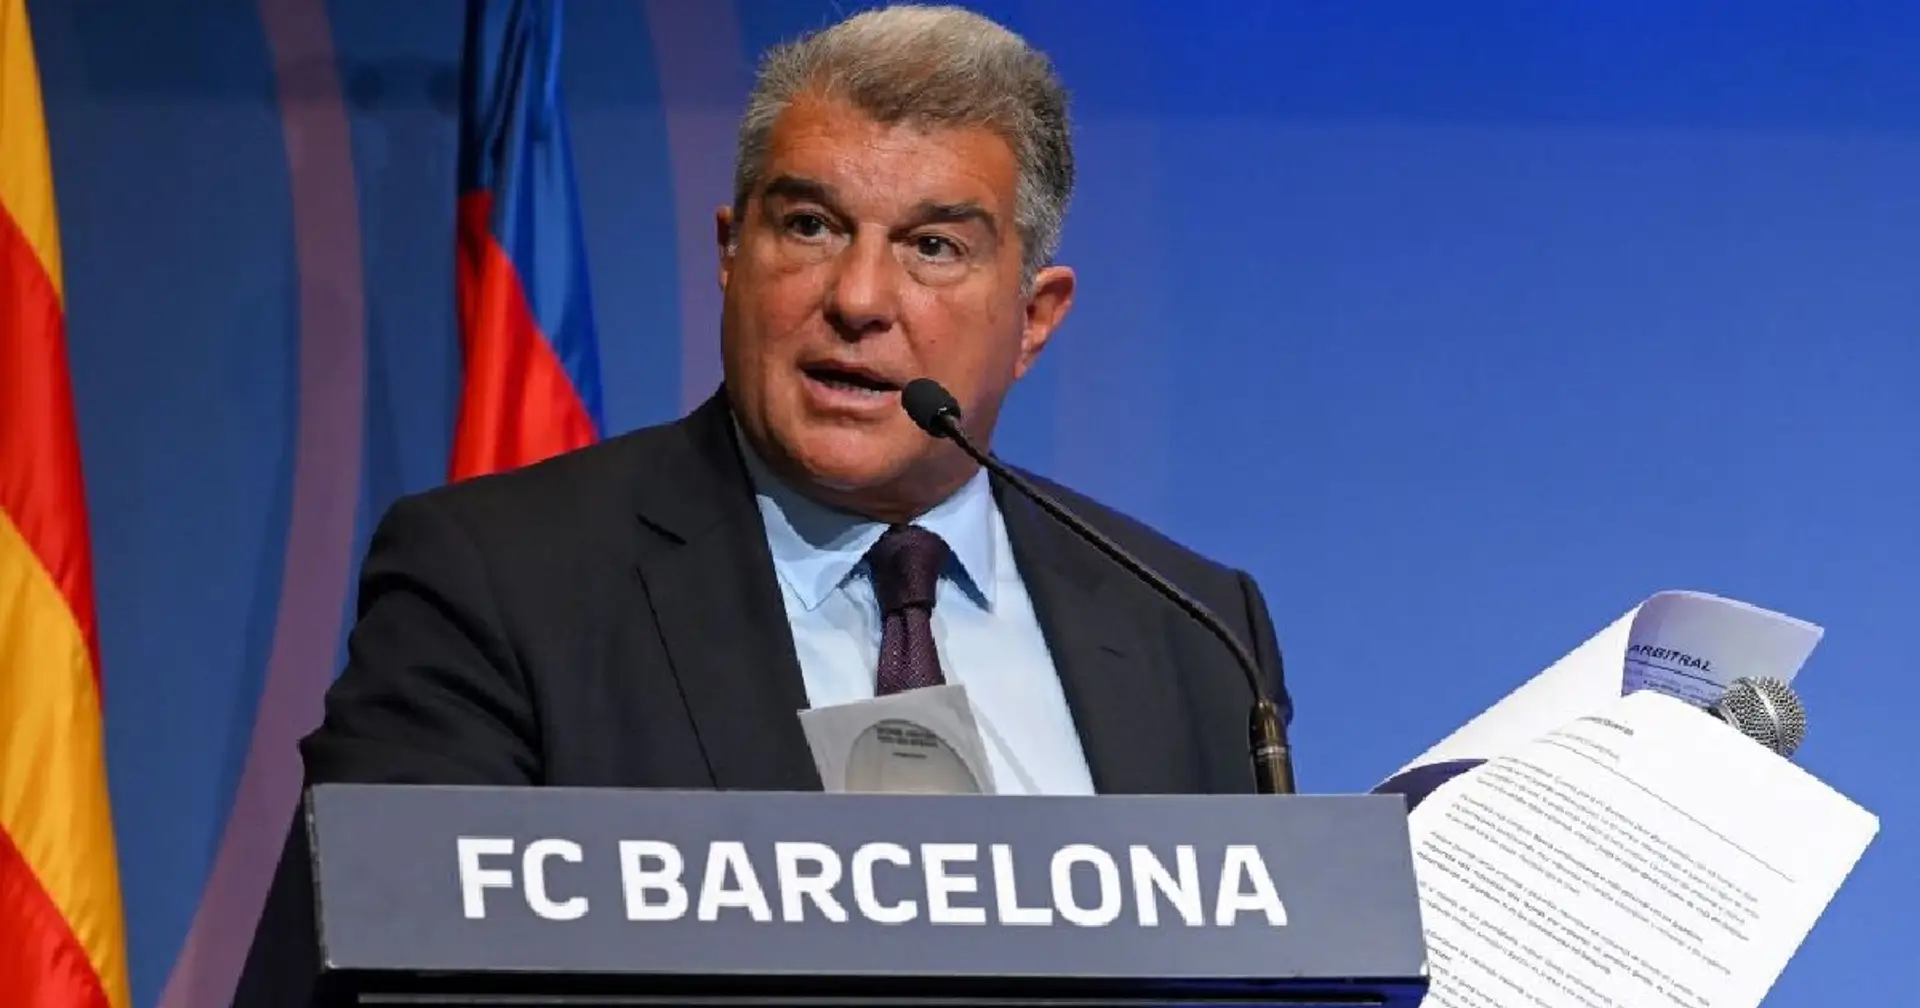 El Barça quiere la repitición del Clásico, pide a la RFEF